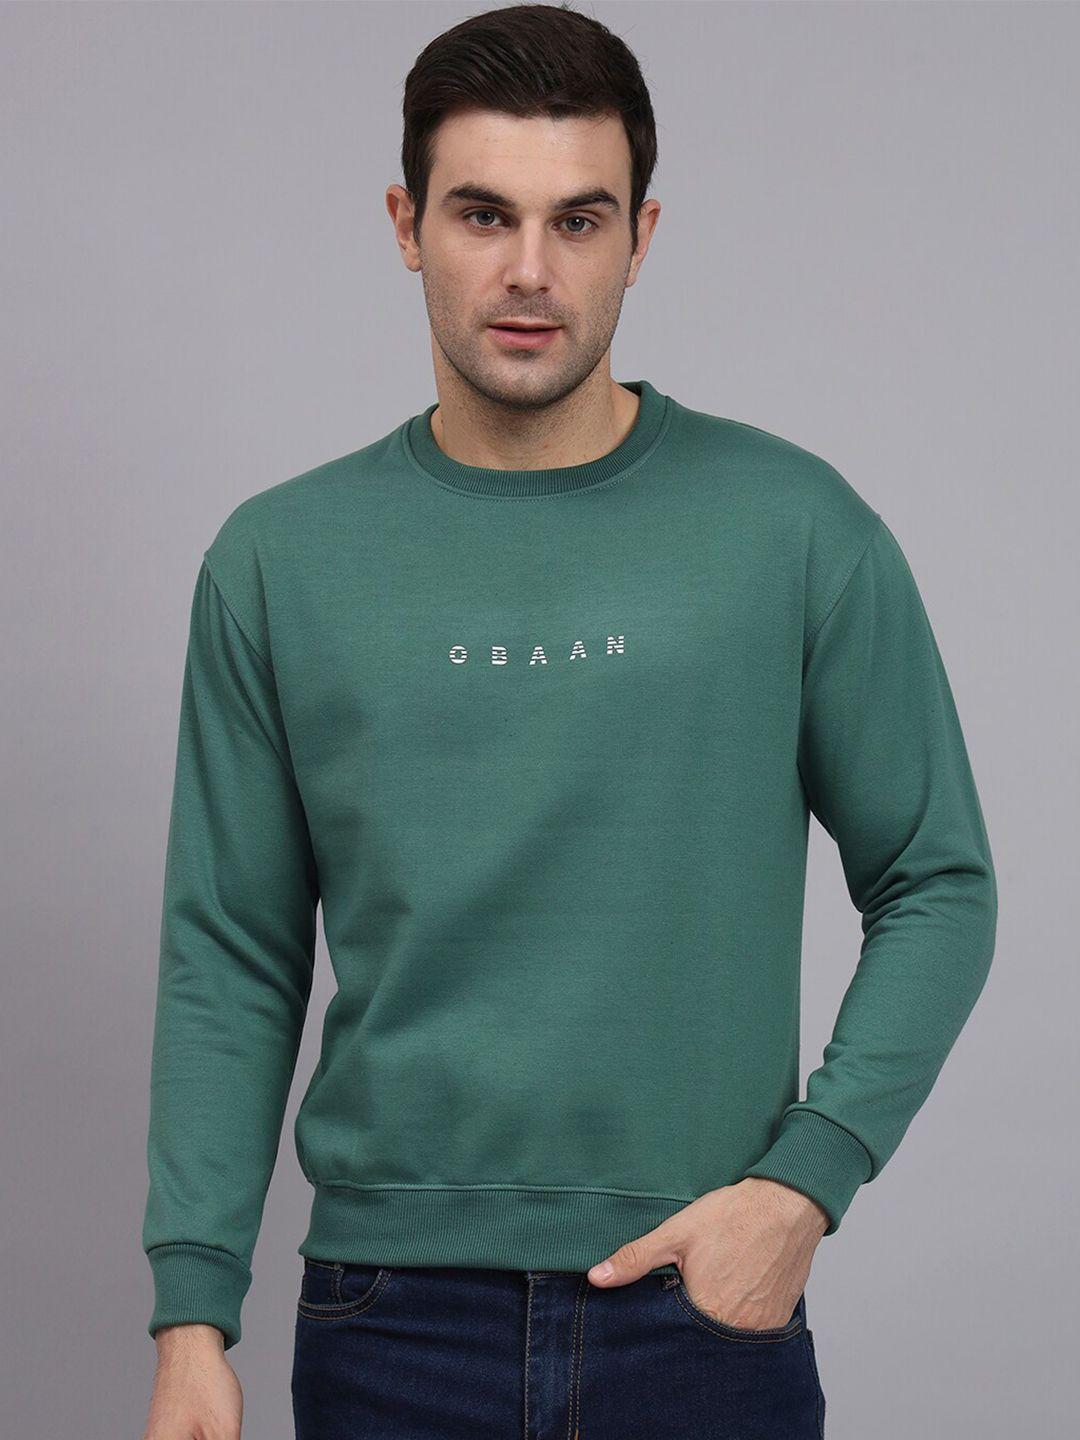 obaan round neck cotton pullover sweatshirt